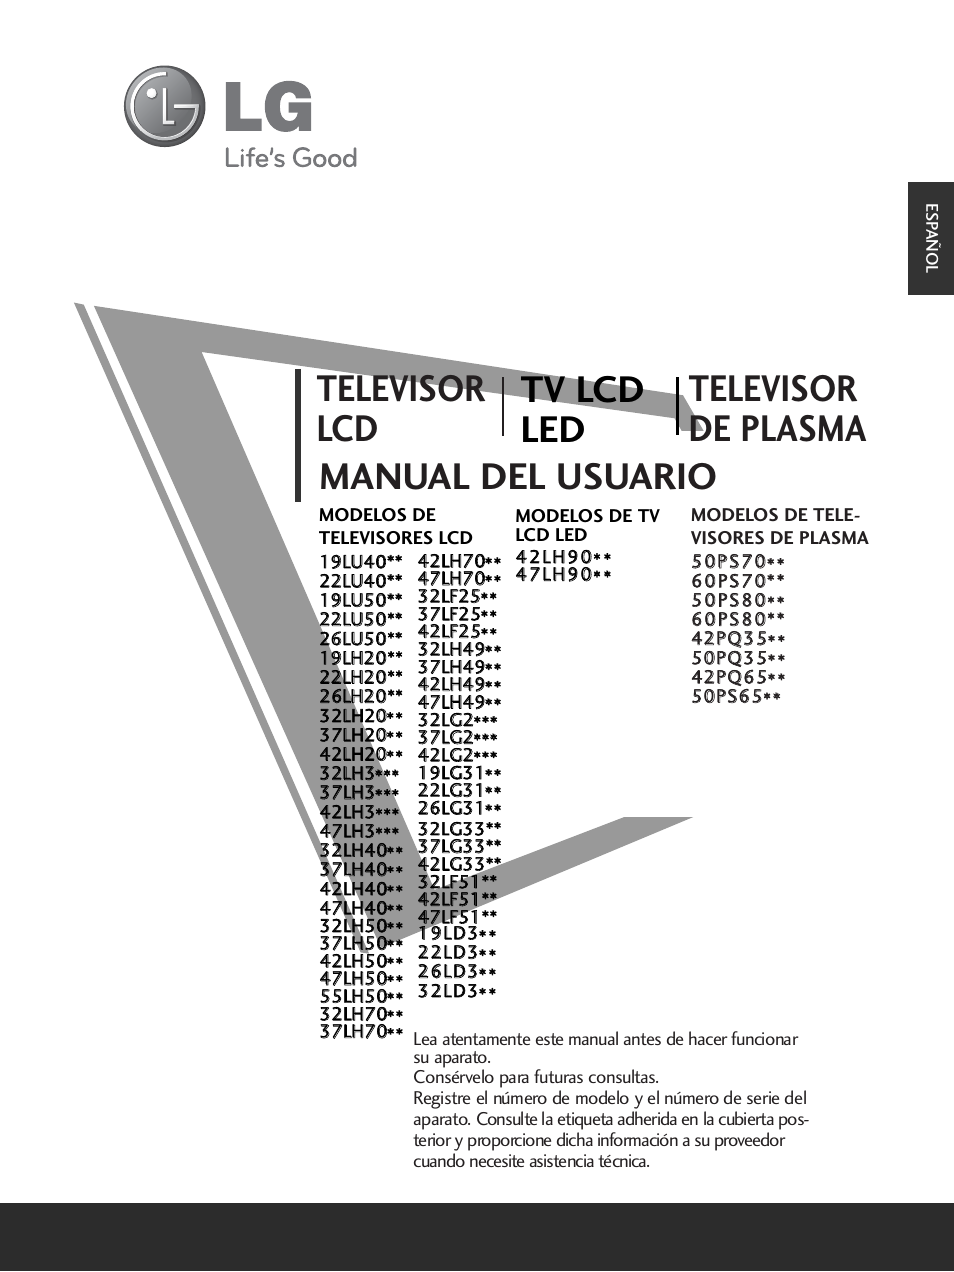 LG 32LH40 Manual del usuario | Páginas: 180